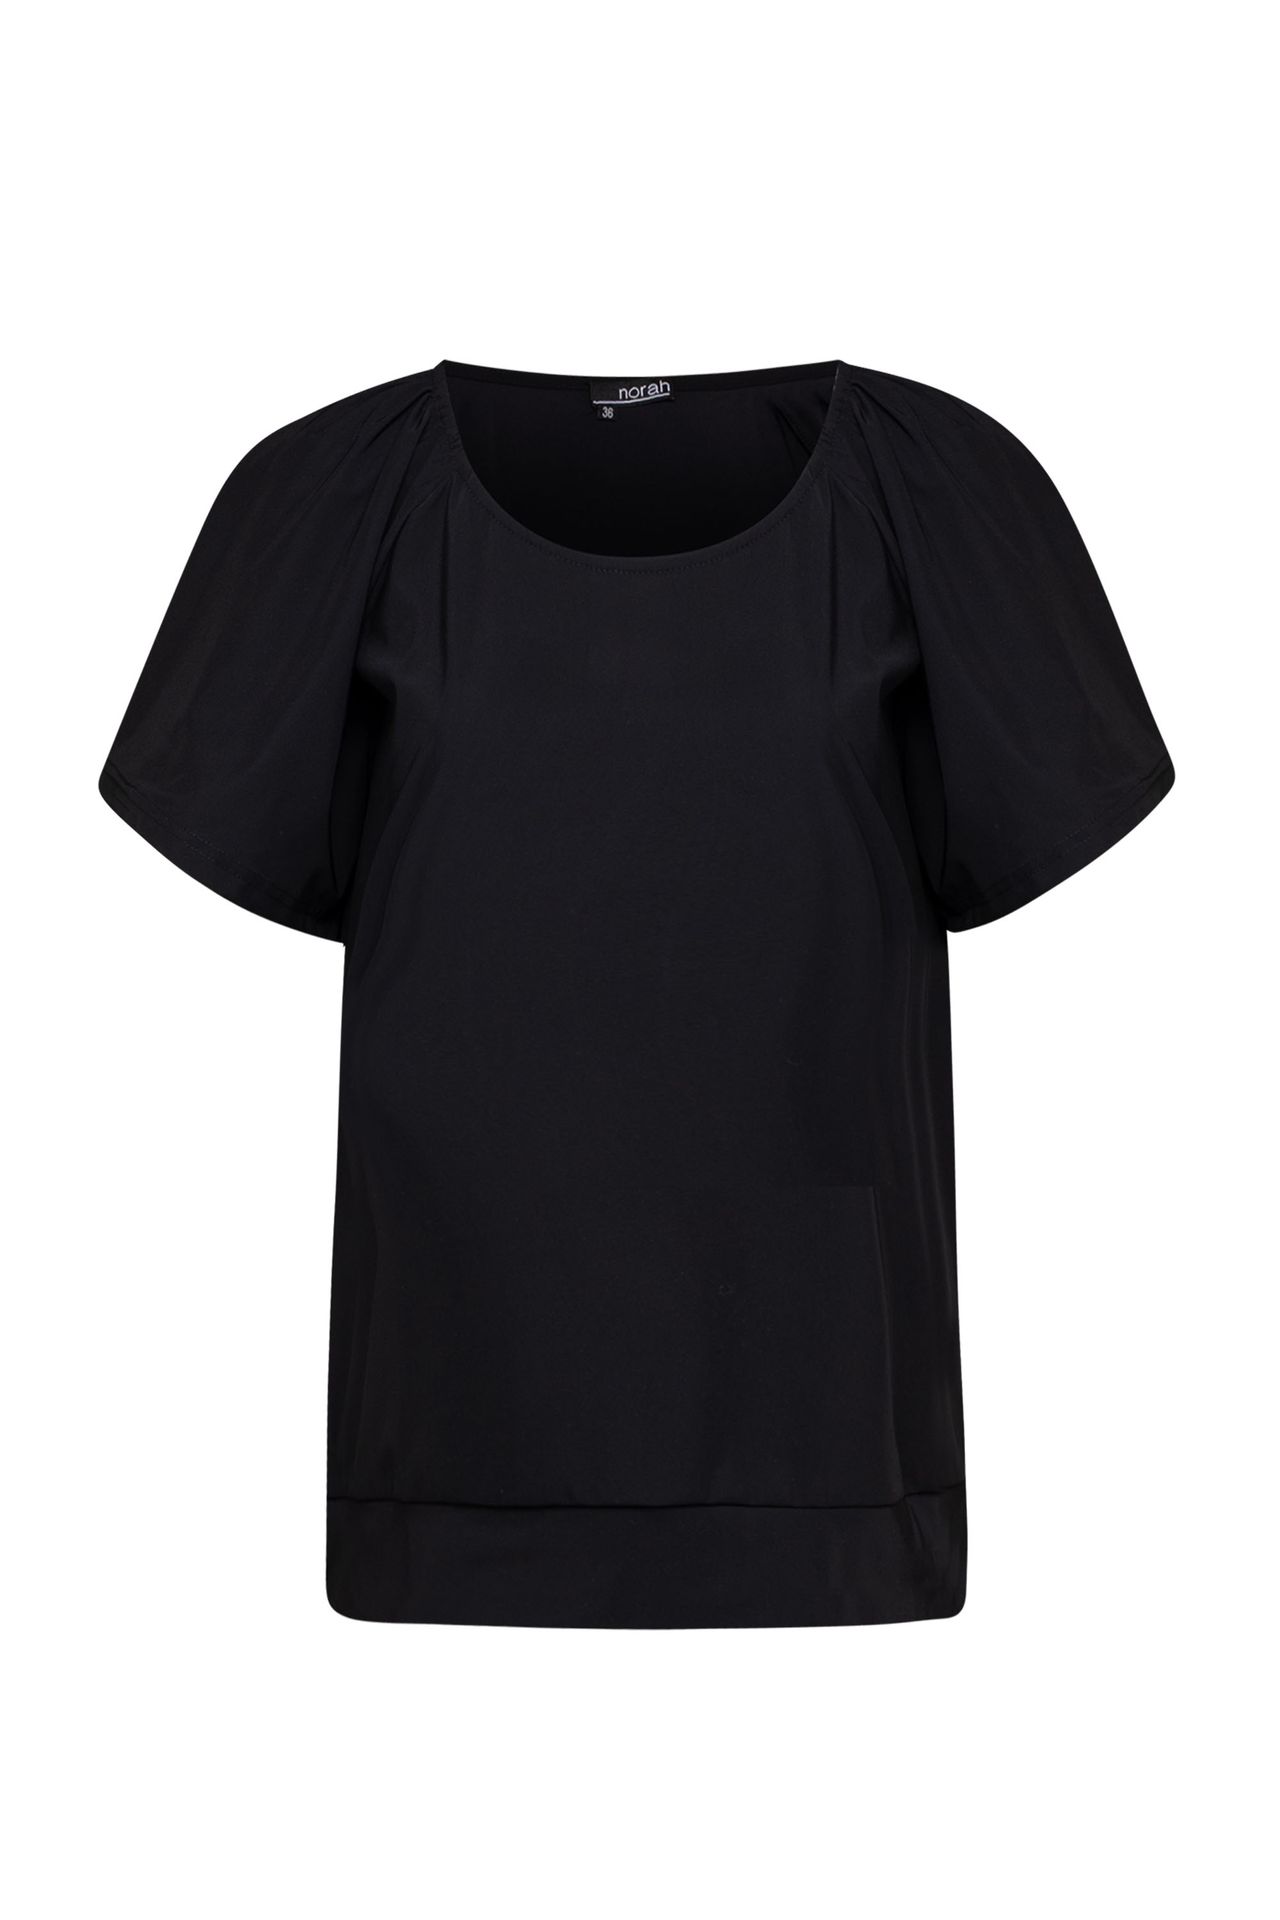 Norah Shirt zwart travelstof black 212566-001